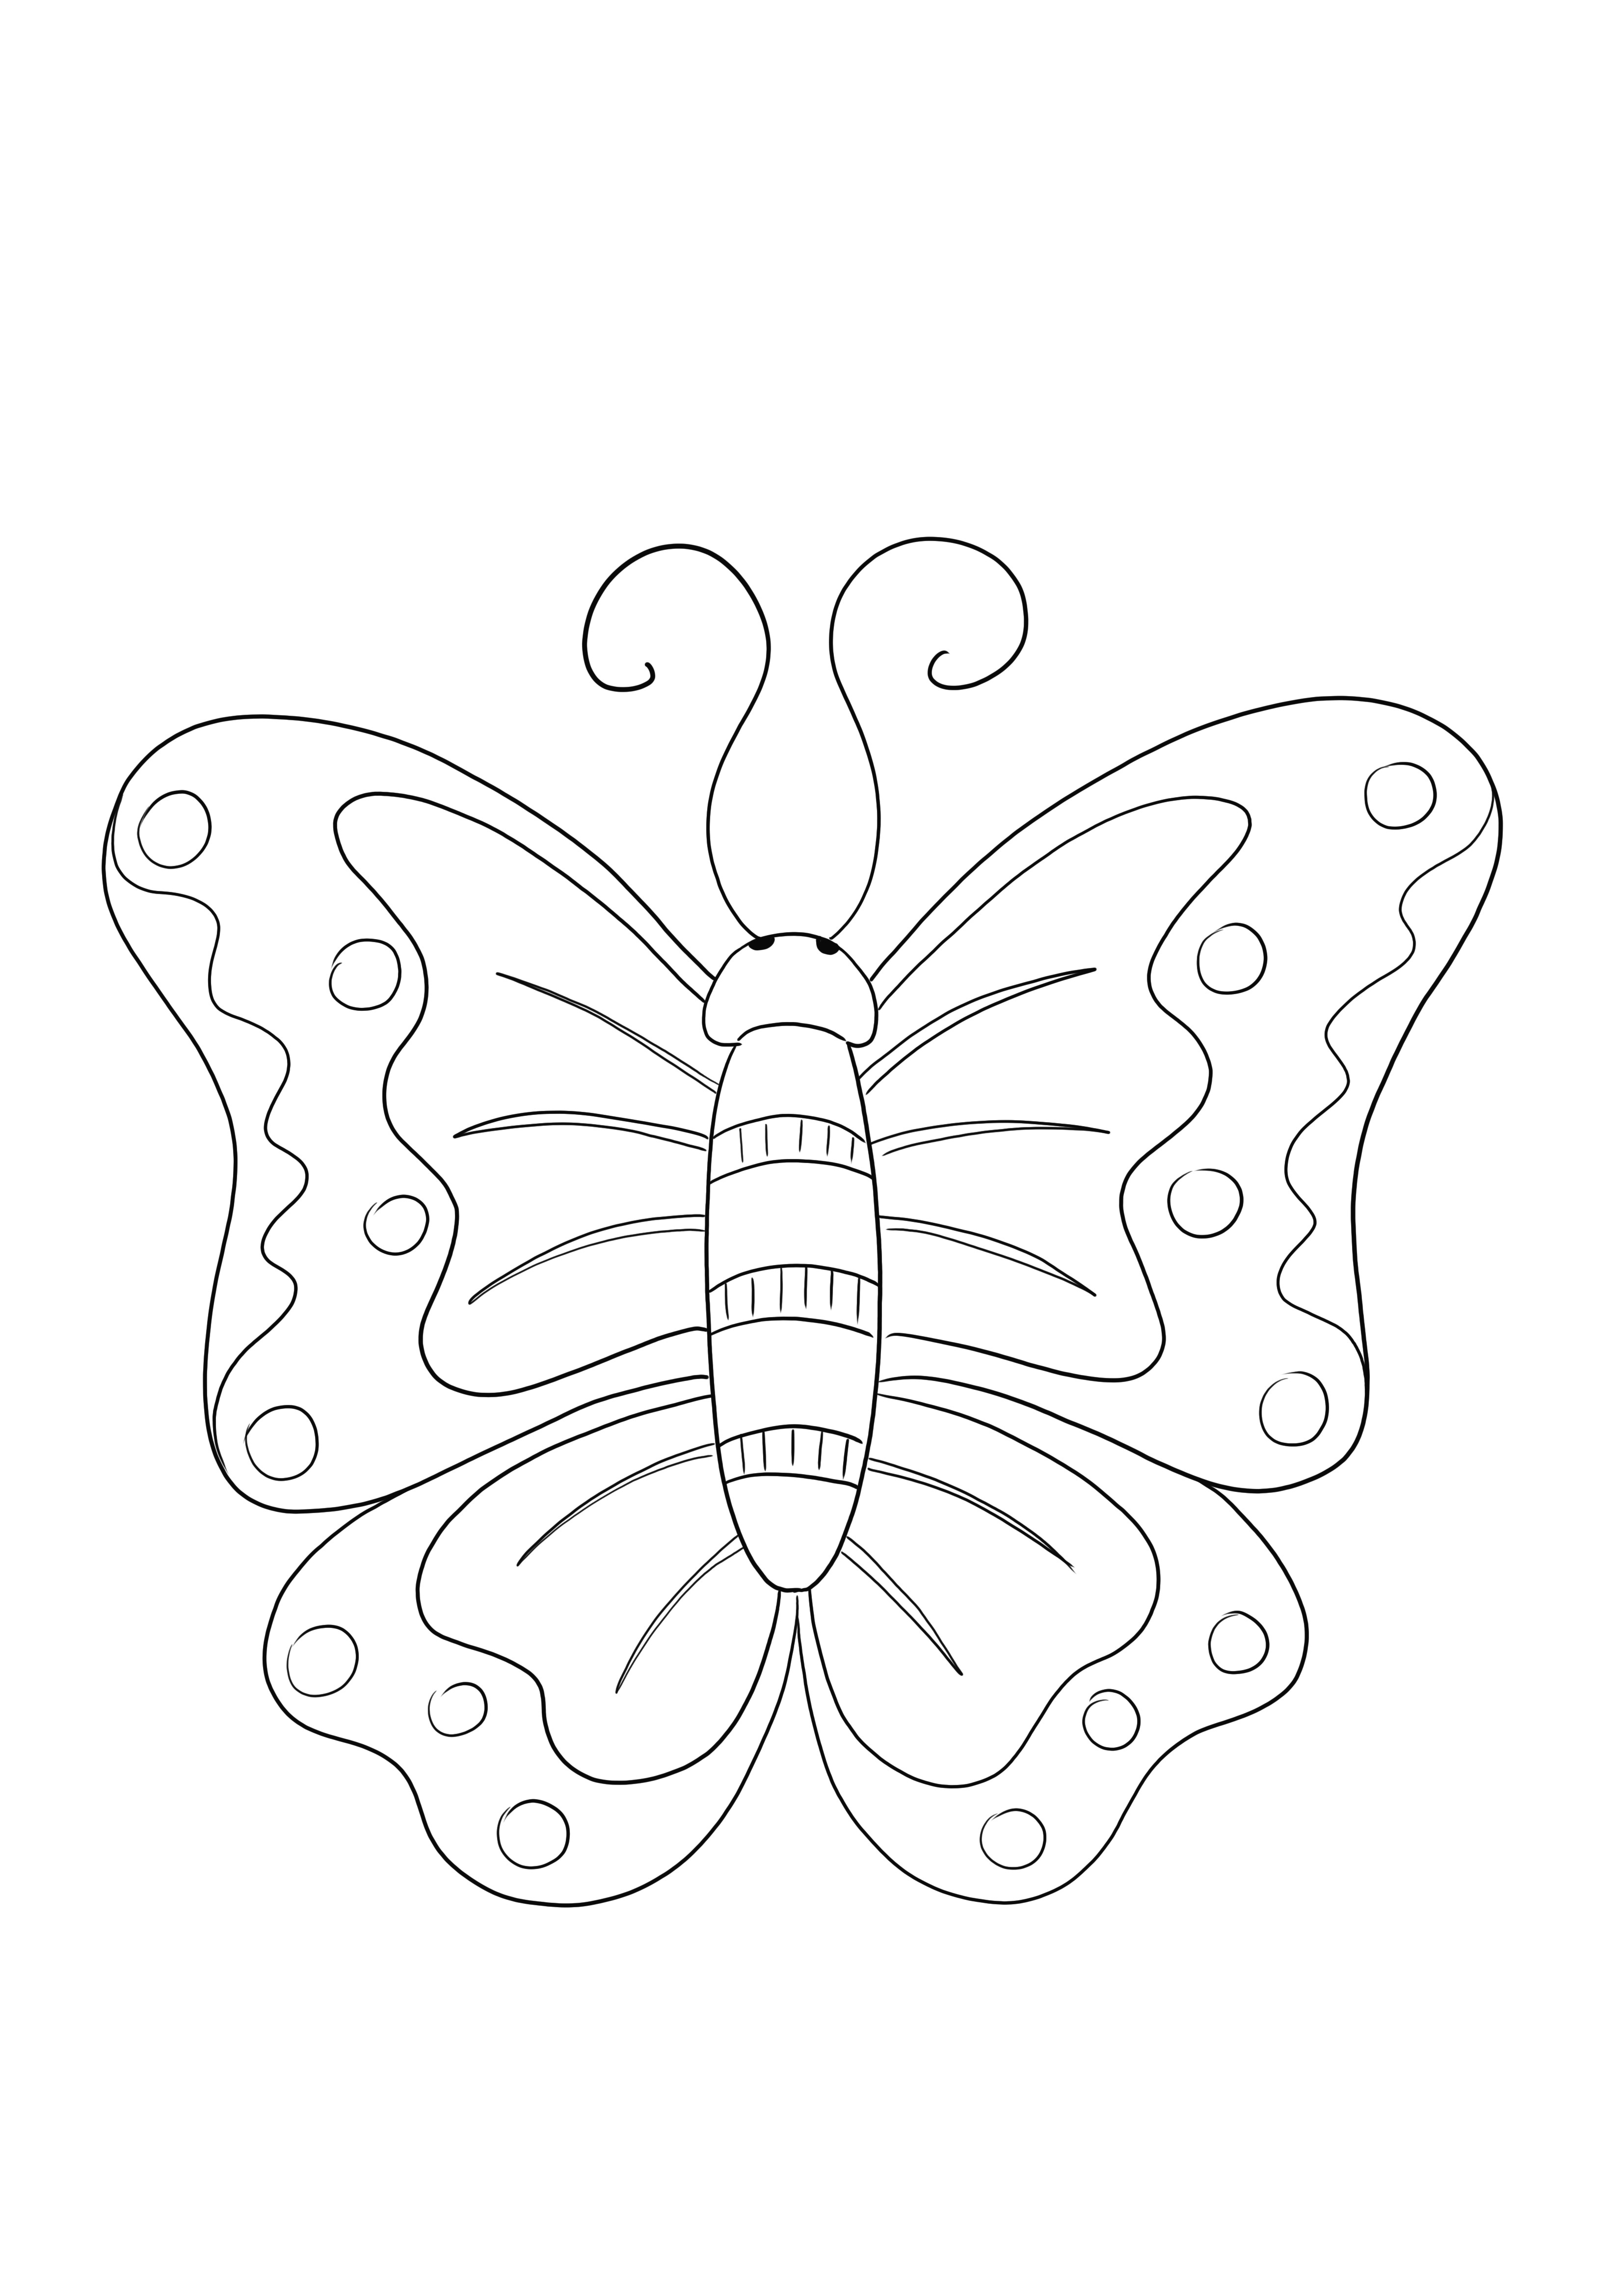 Ilmainen väritysarkki Butterflysta - yksinkertaisesti tulostettava ja käytettävä lapsille hyönteisten oppimiseen